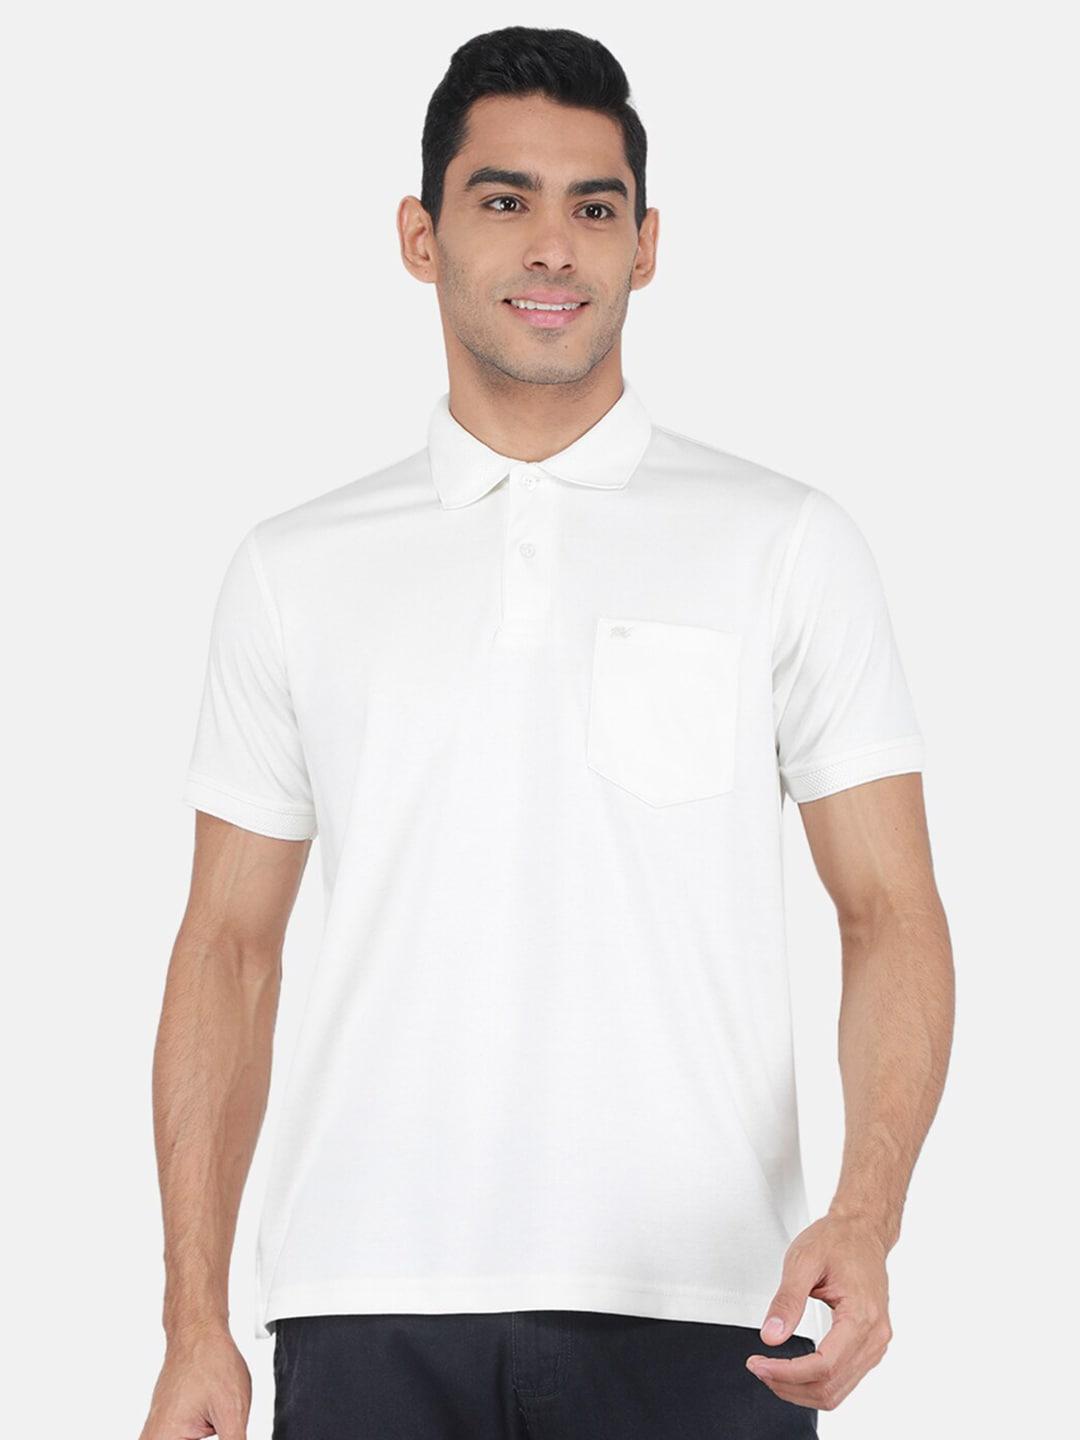 Monte Carlo Polo Collar Short Sleeves T-shirt